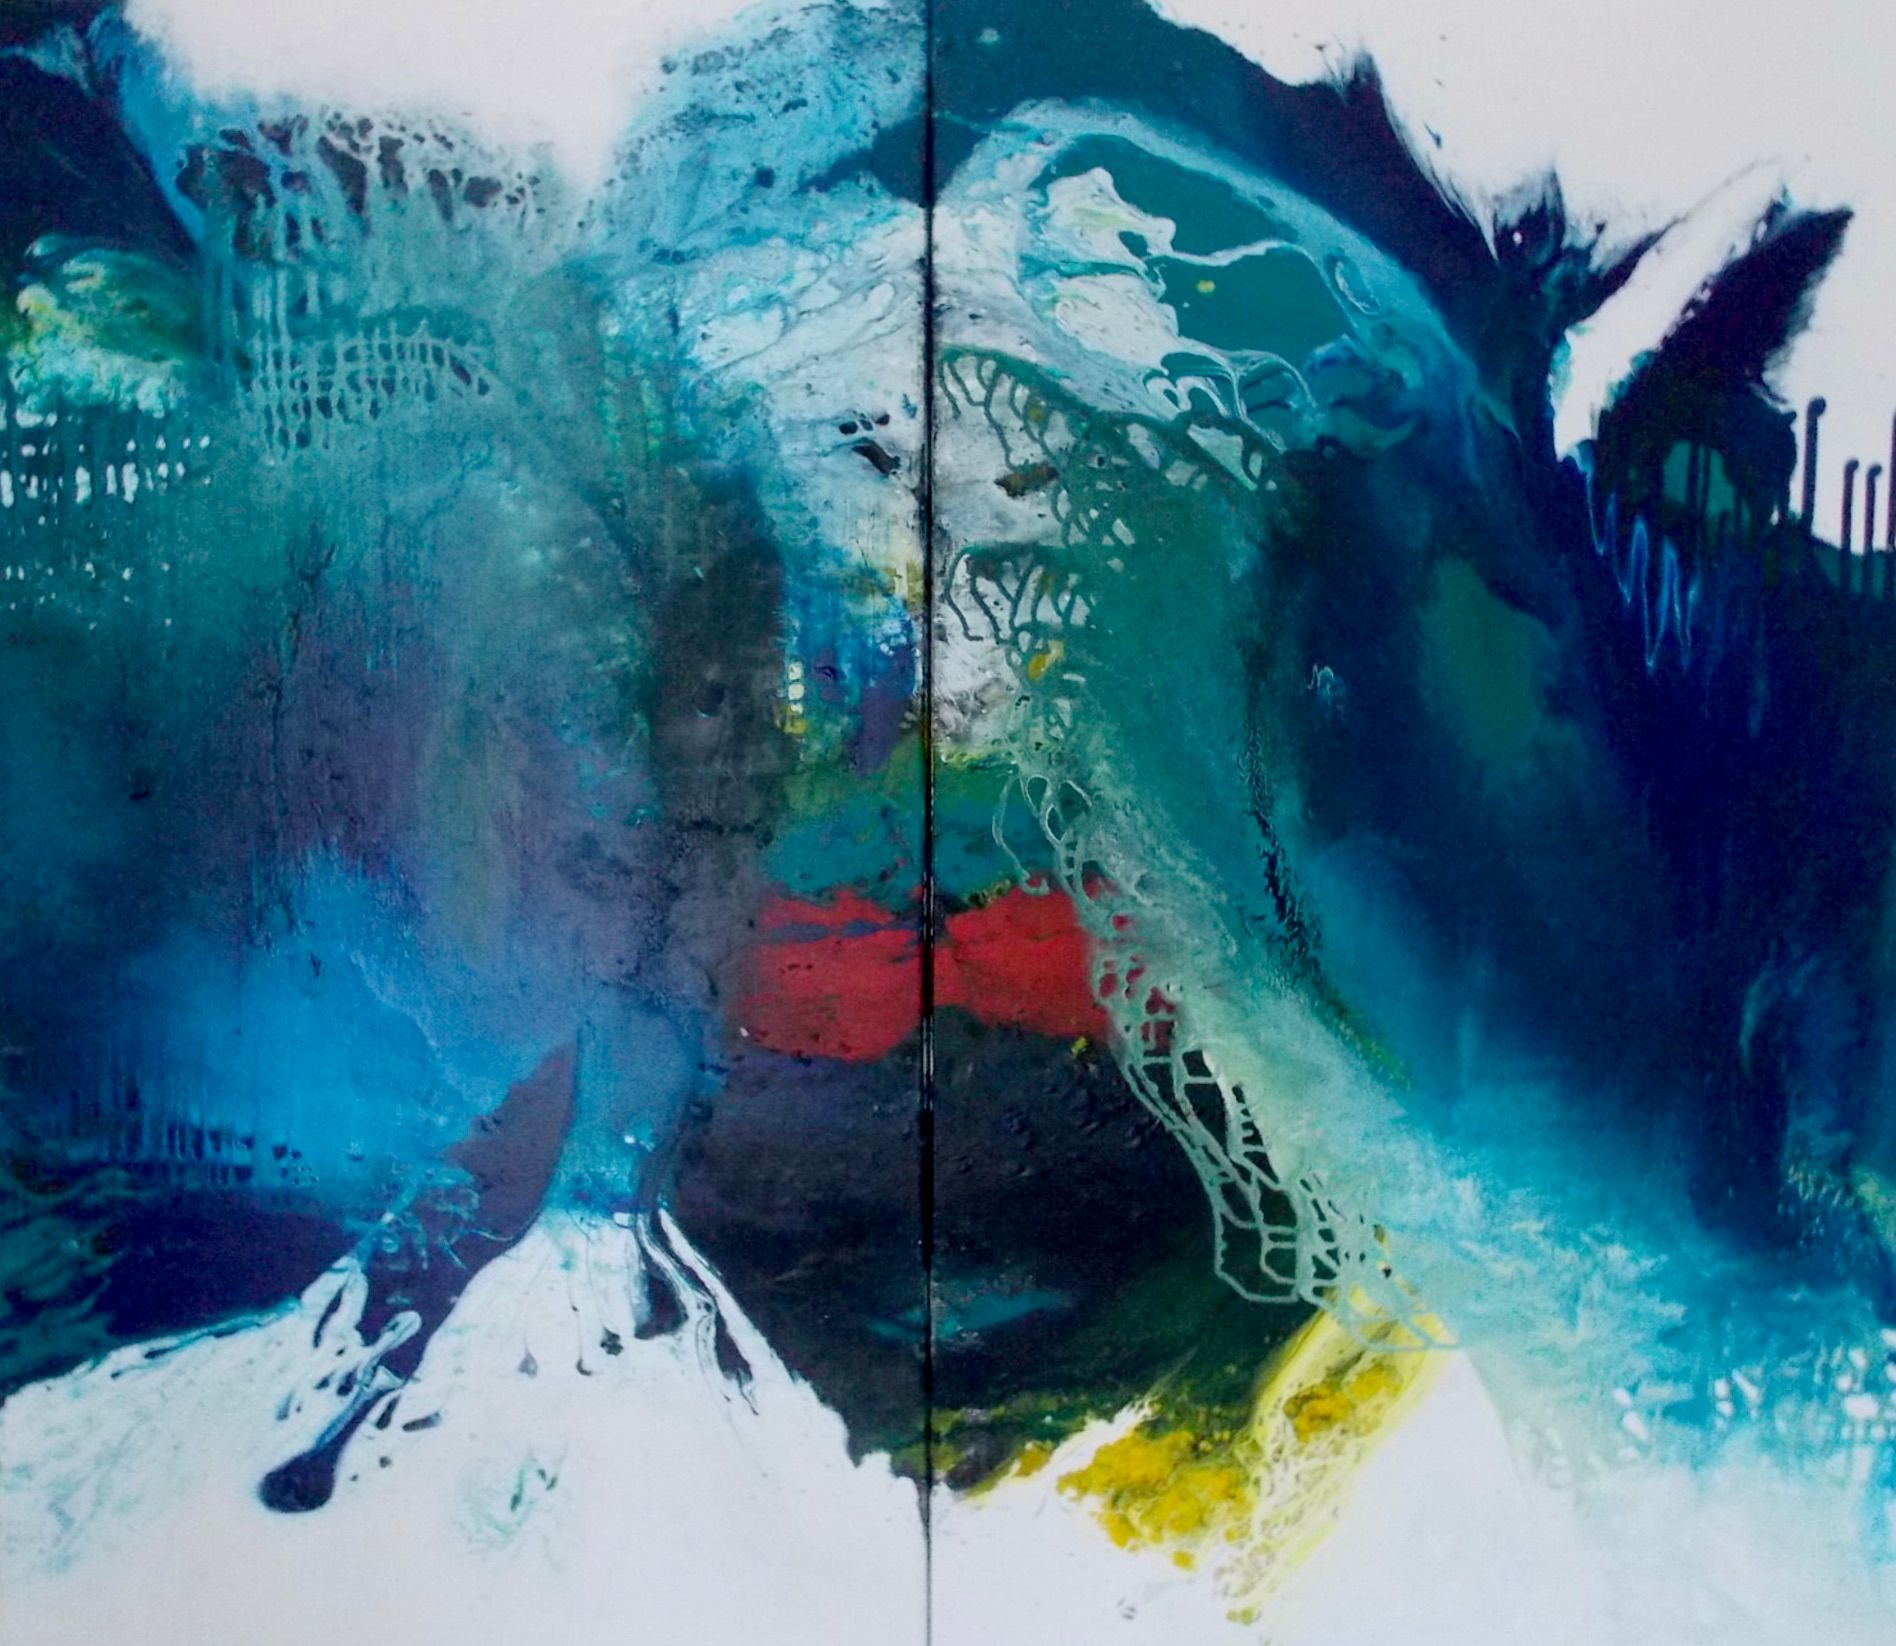 Reconocimiento azul 1 + 2 - Díptico -", de Christa Haack Este cuadro abstracto consta de dos imágenes unidas. Los colores son predominantemente azul, turquesa, verde, con un poco de rojo y amarillo.